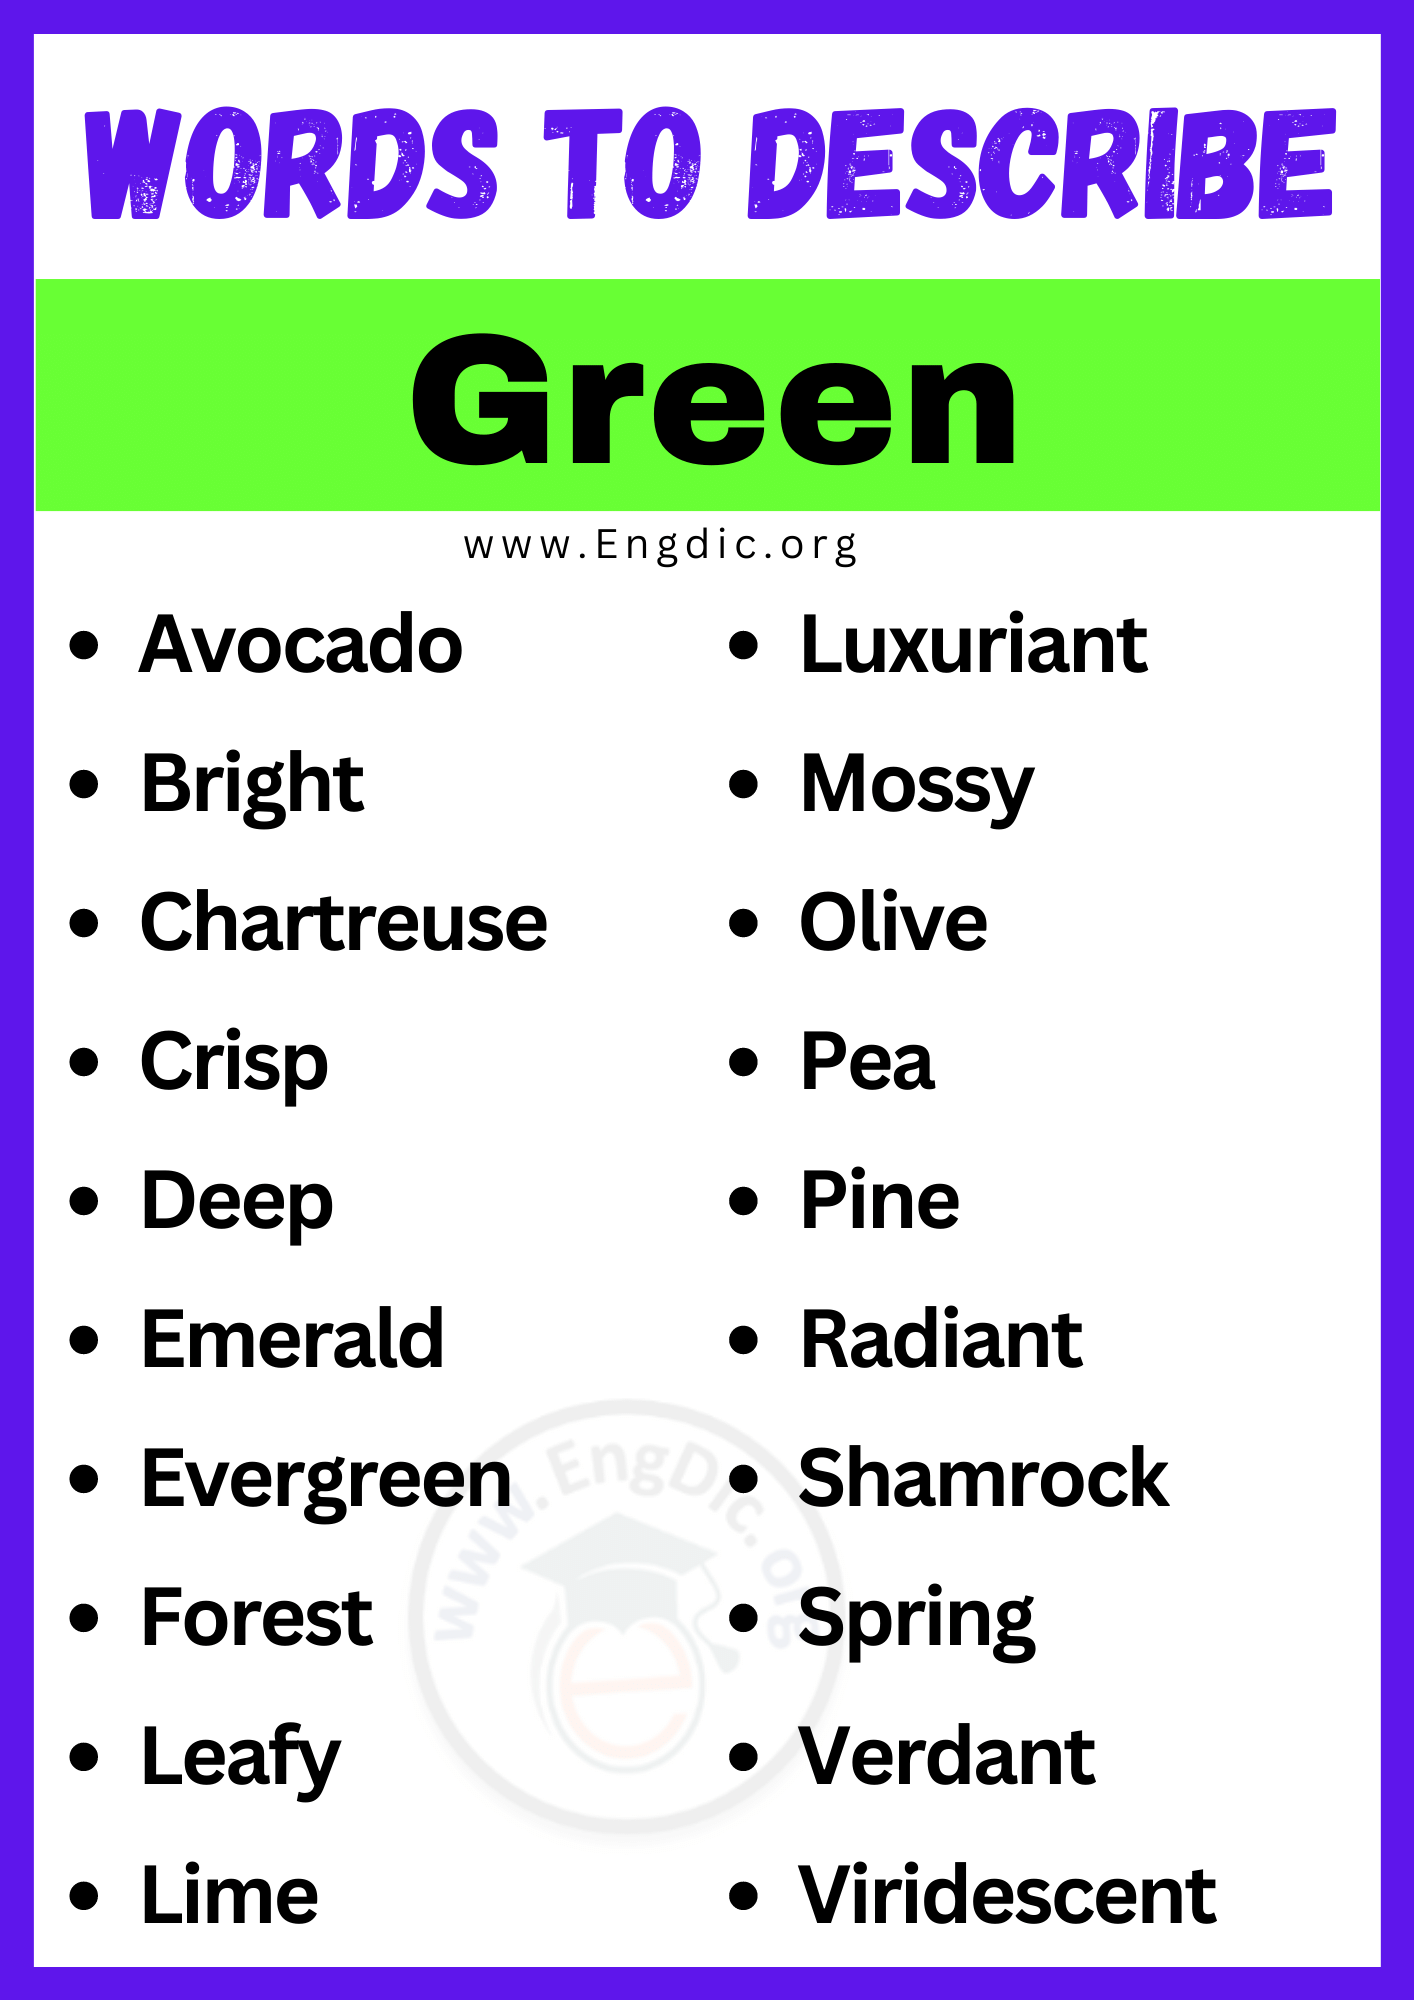 Words to Describe Green